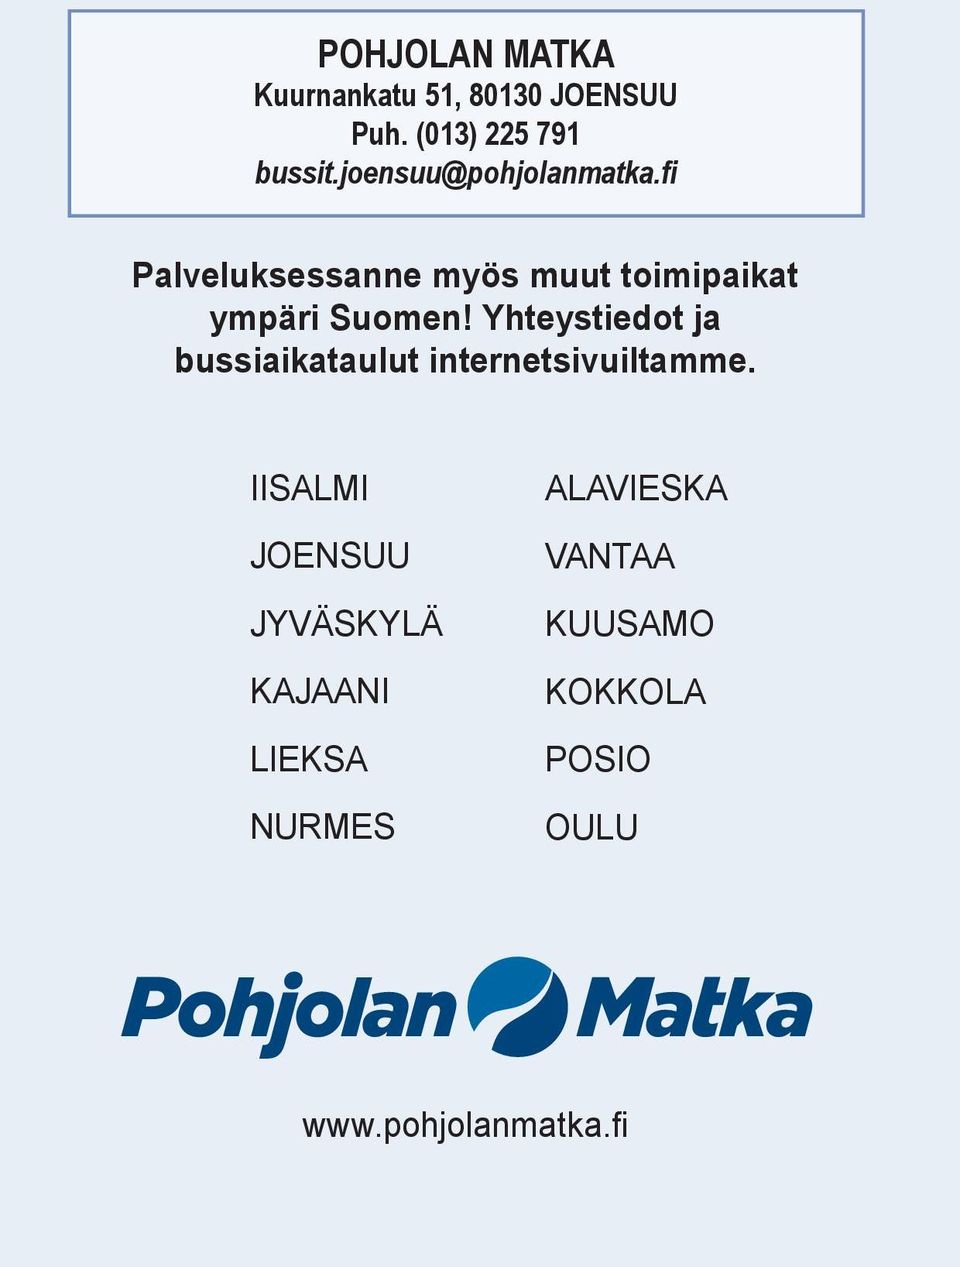 fi Paveuksessanne myös muut toimipaikat ympäri Suomen!